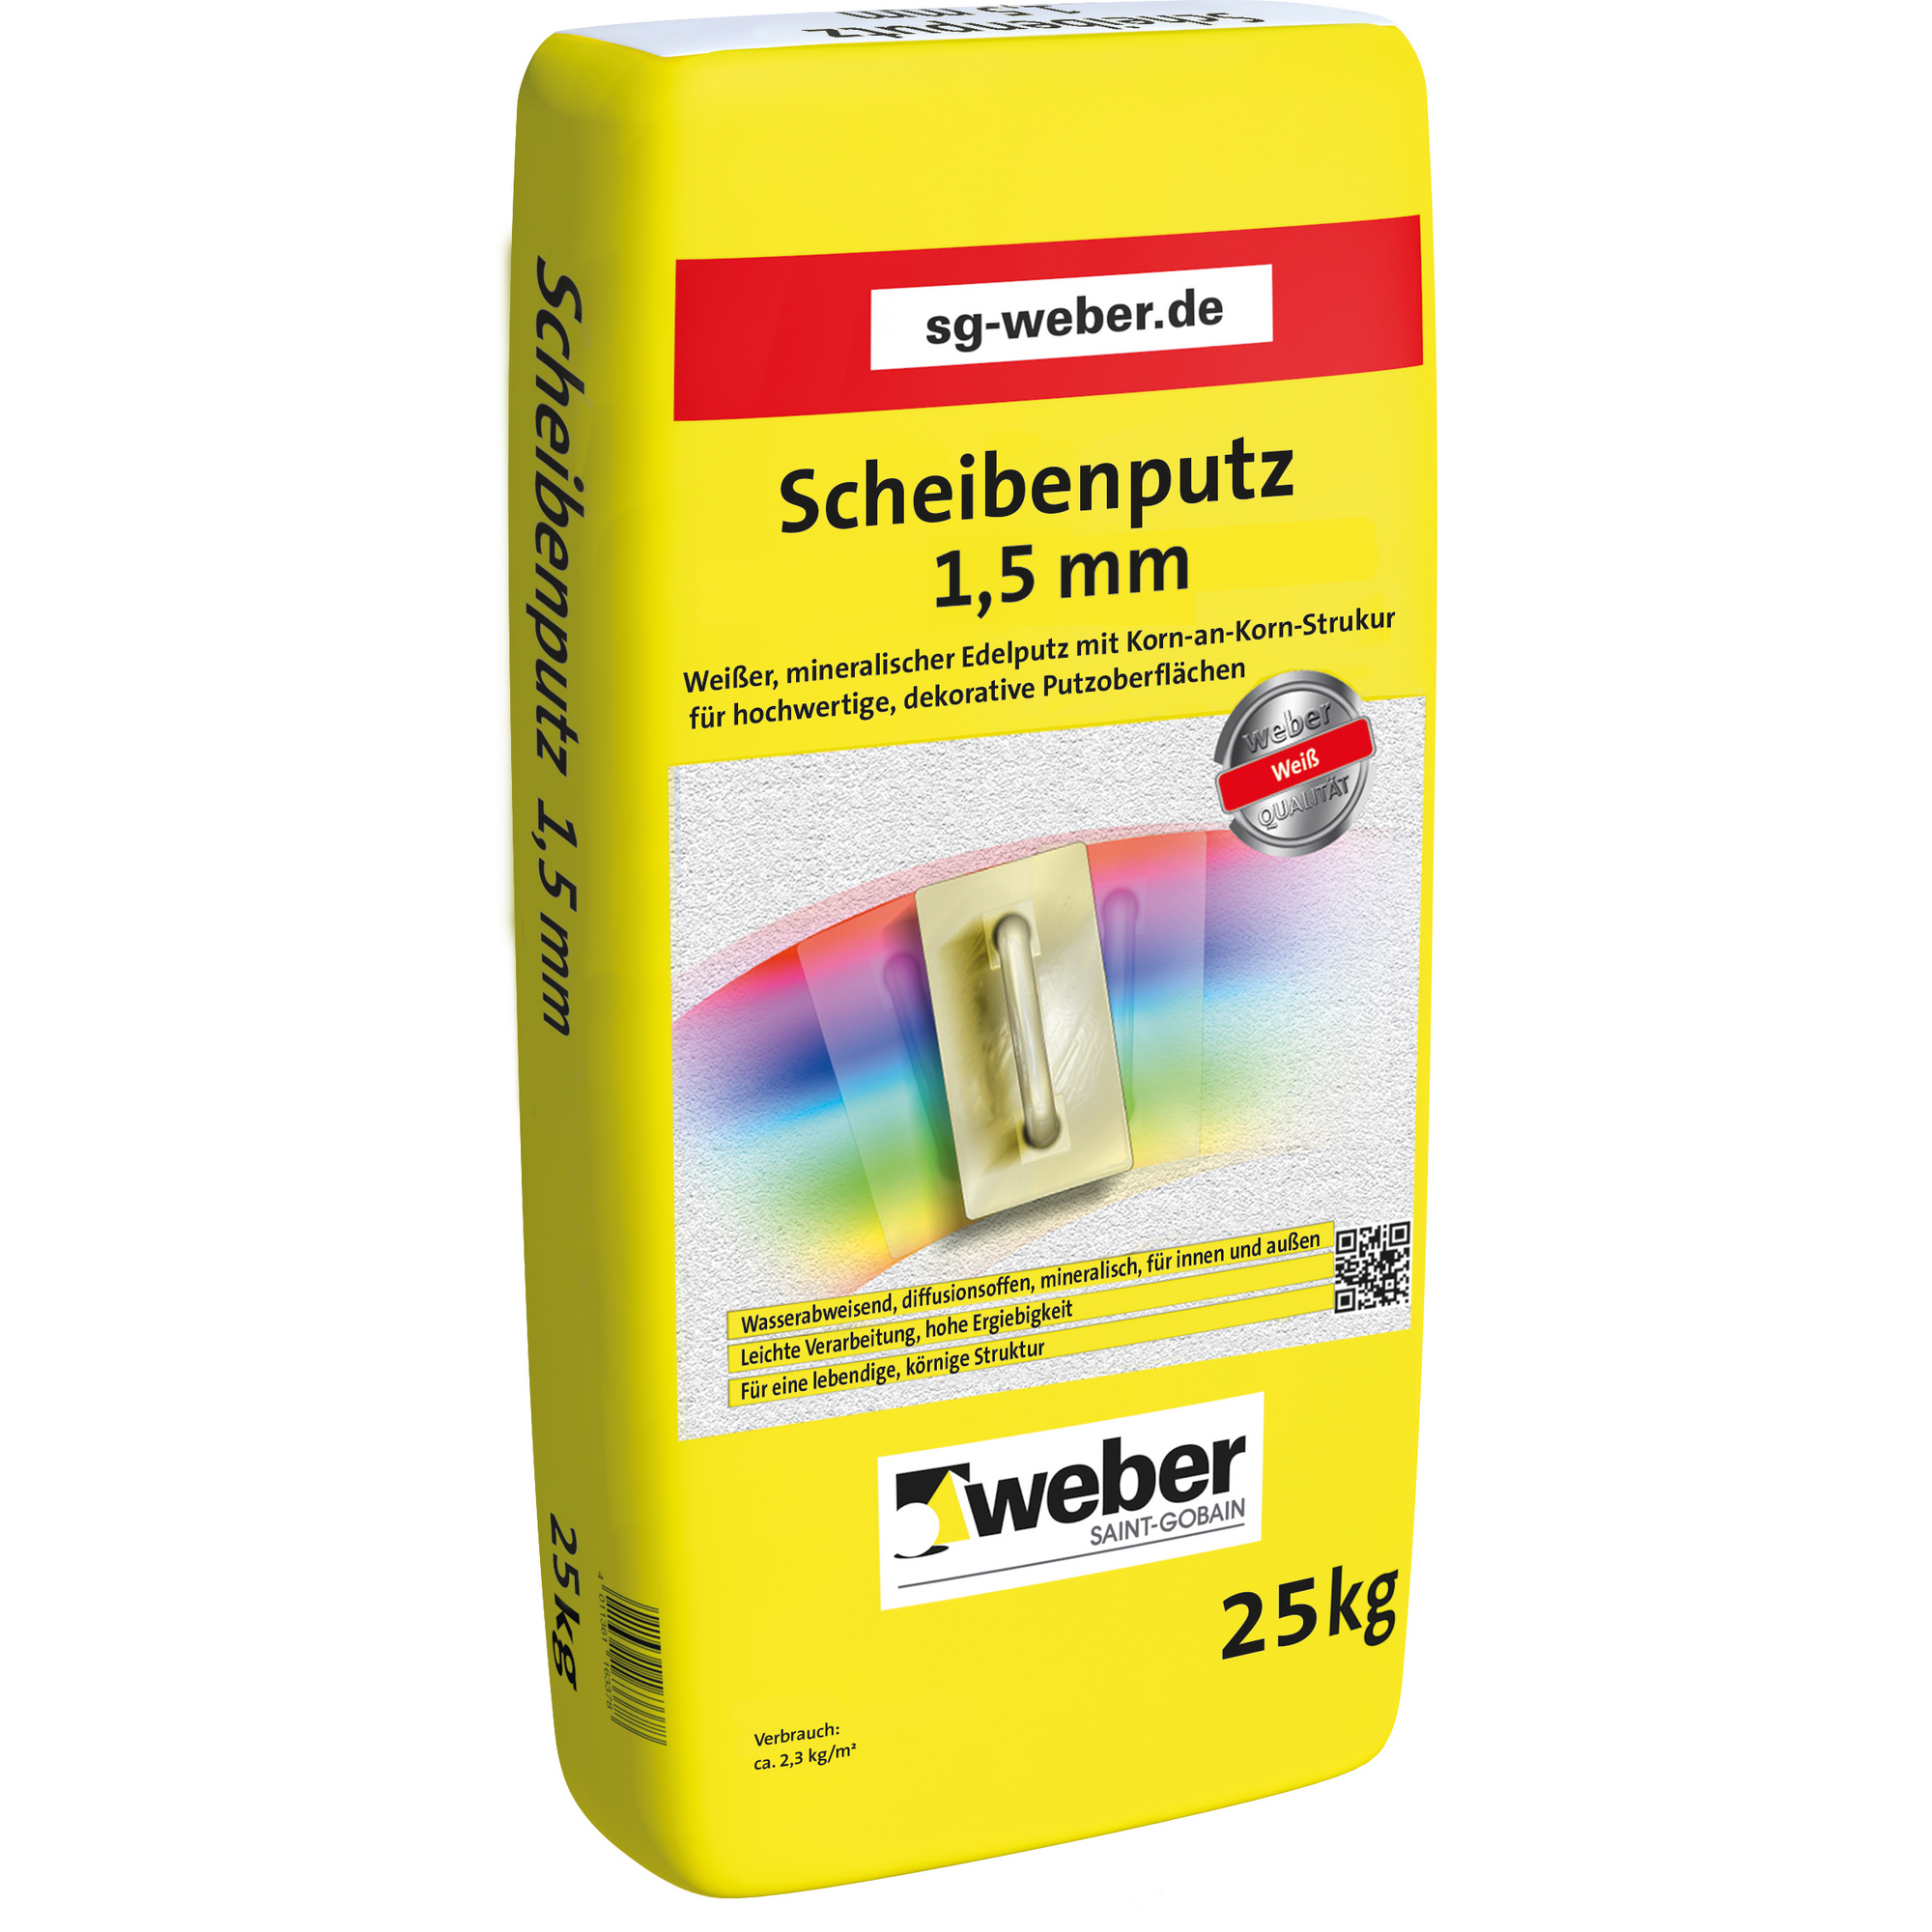 Scheibenputz 25 kg + product picture